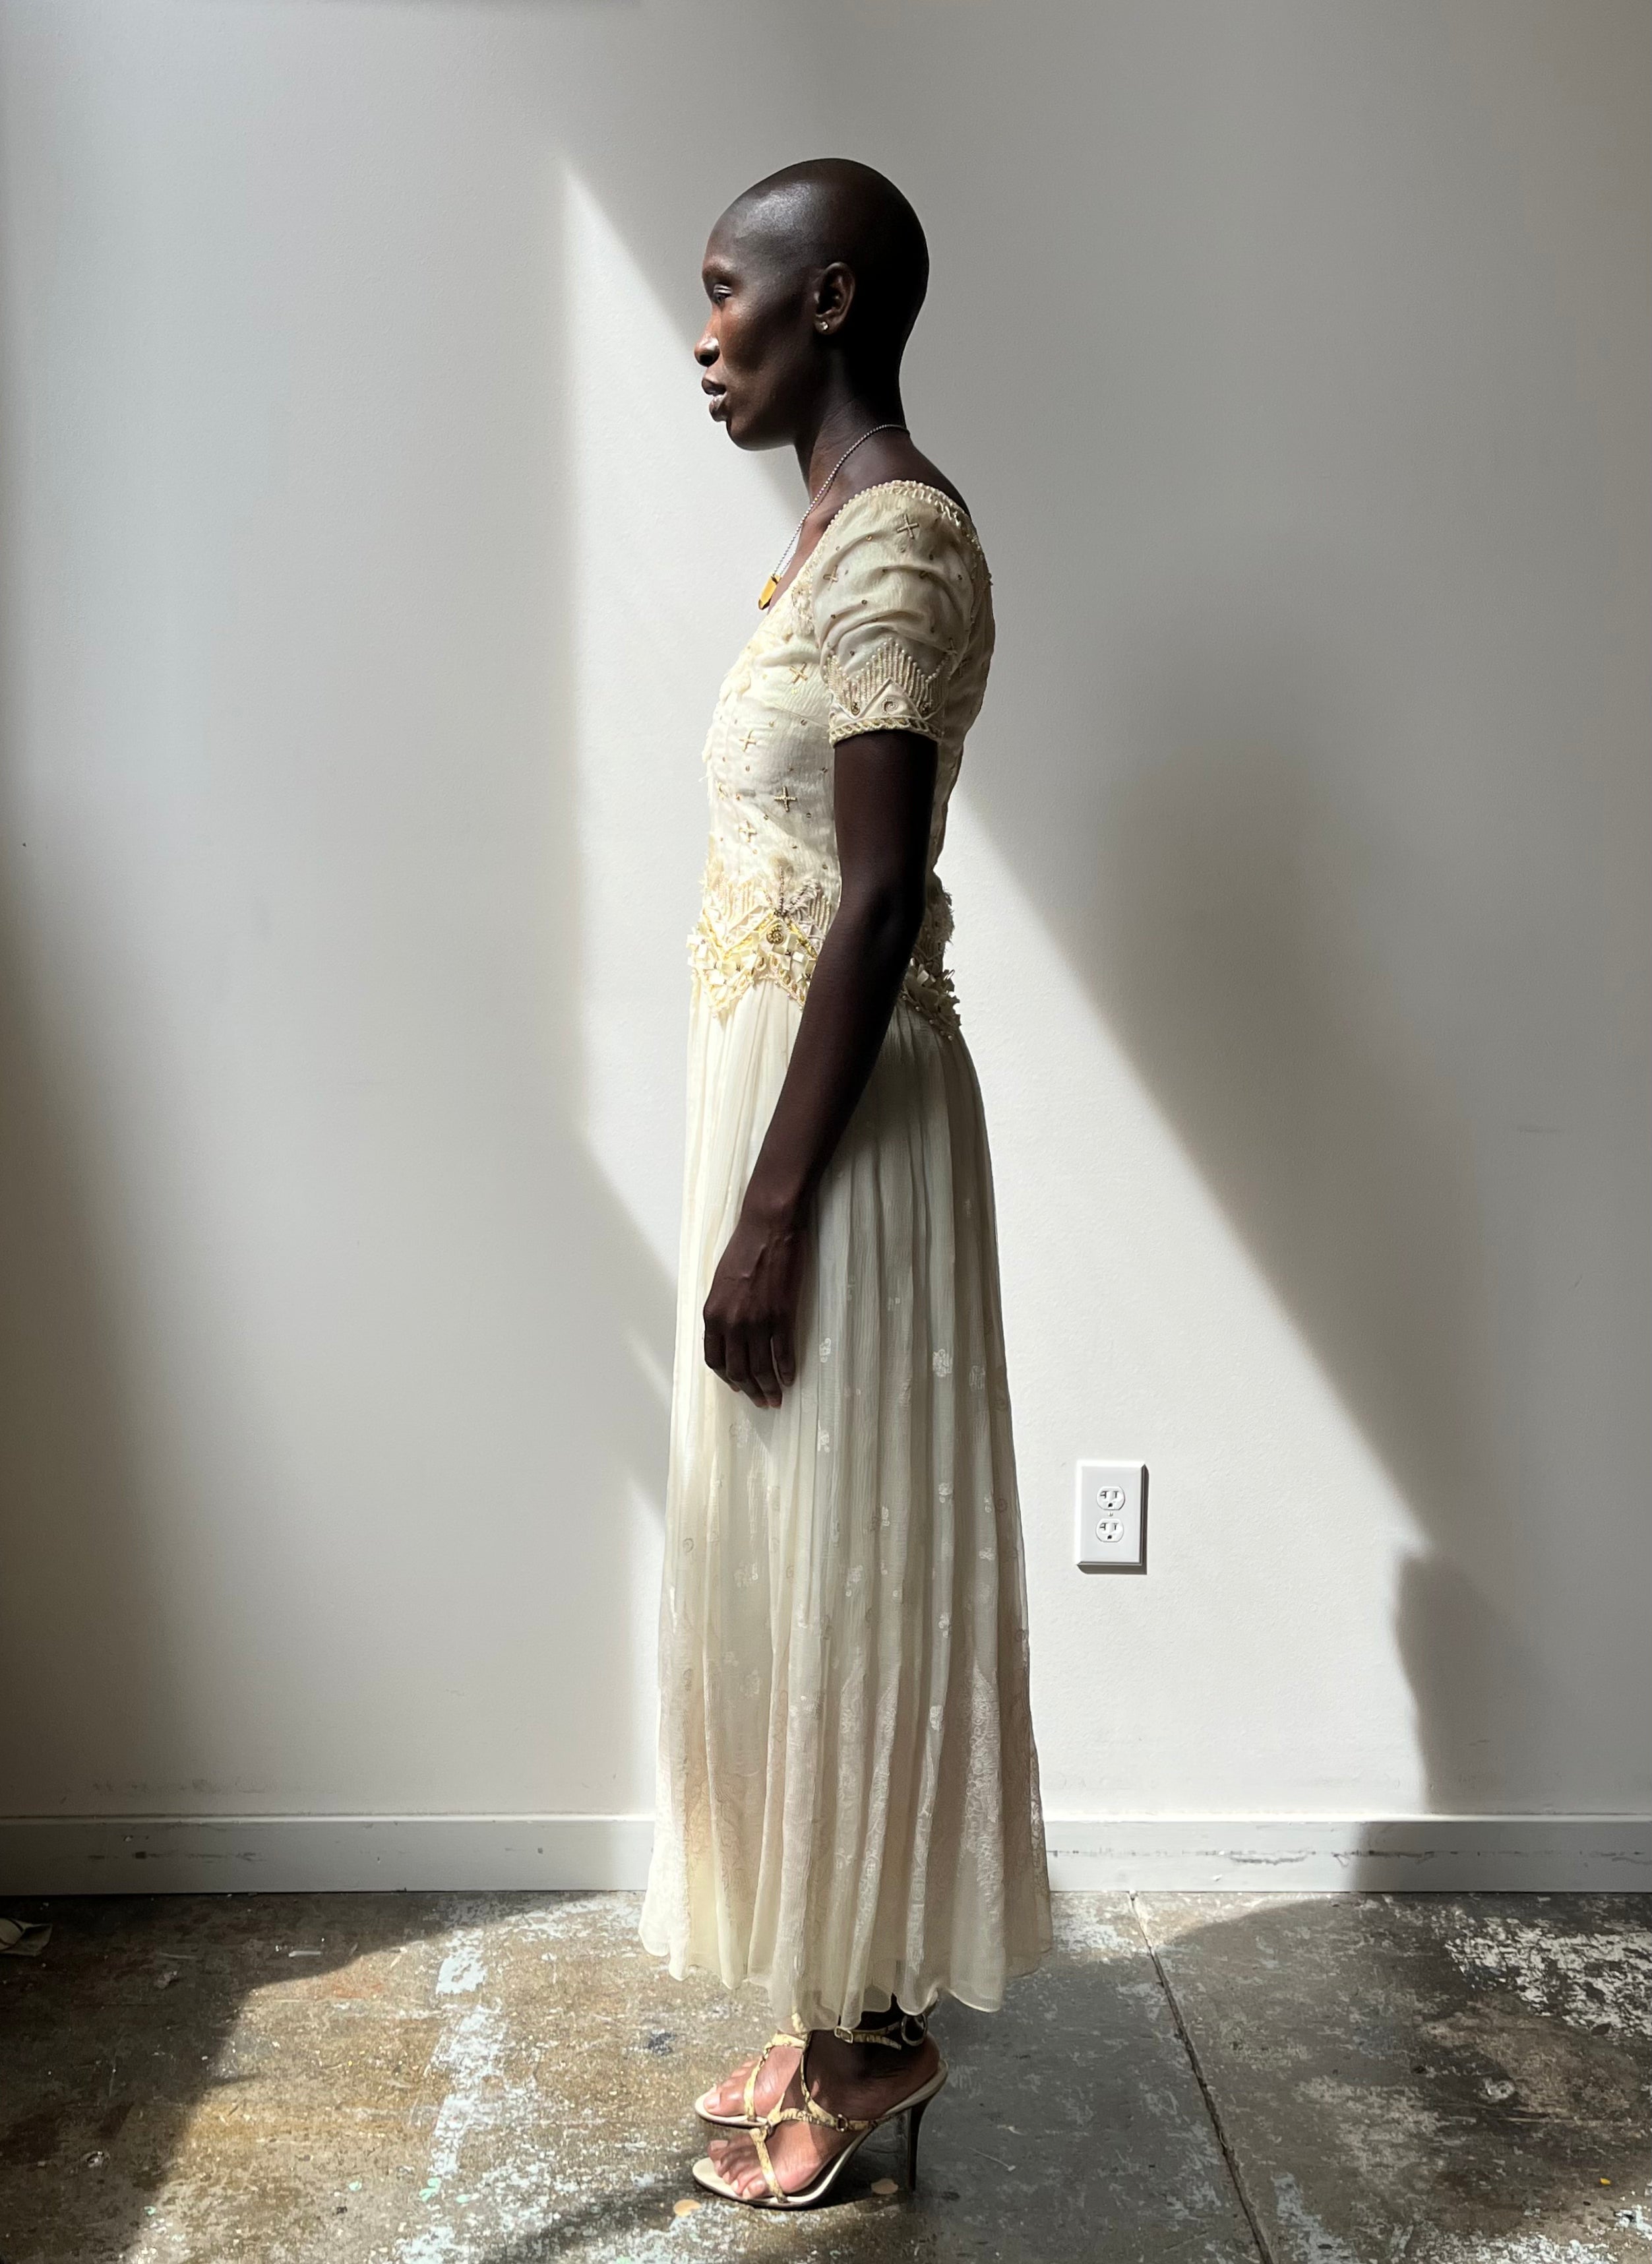 Zandra Rhodes Off-White Silk Blend Evening Gown